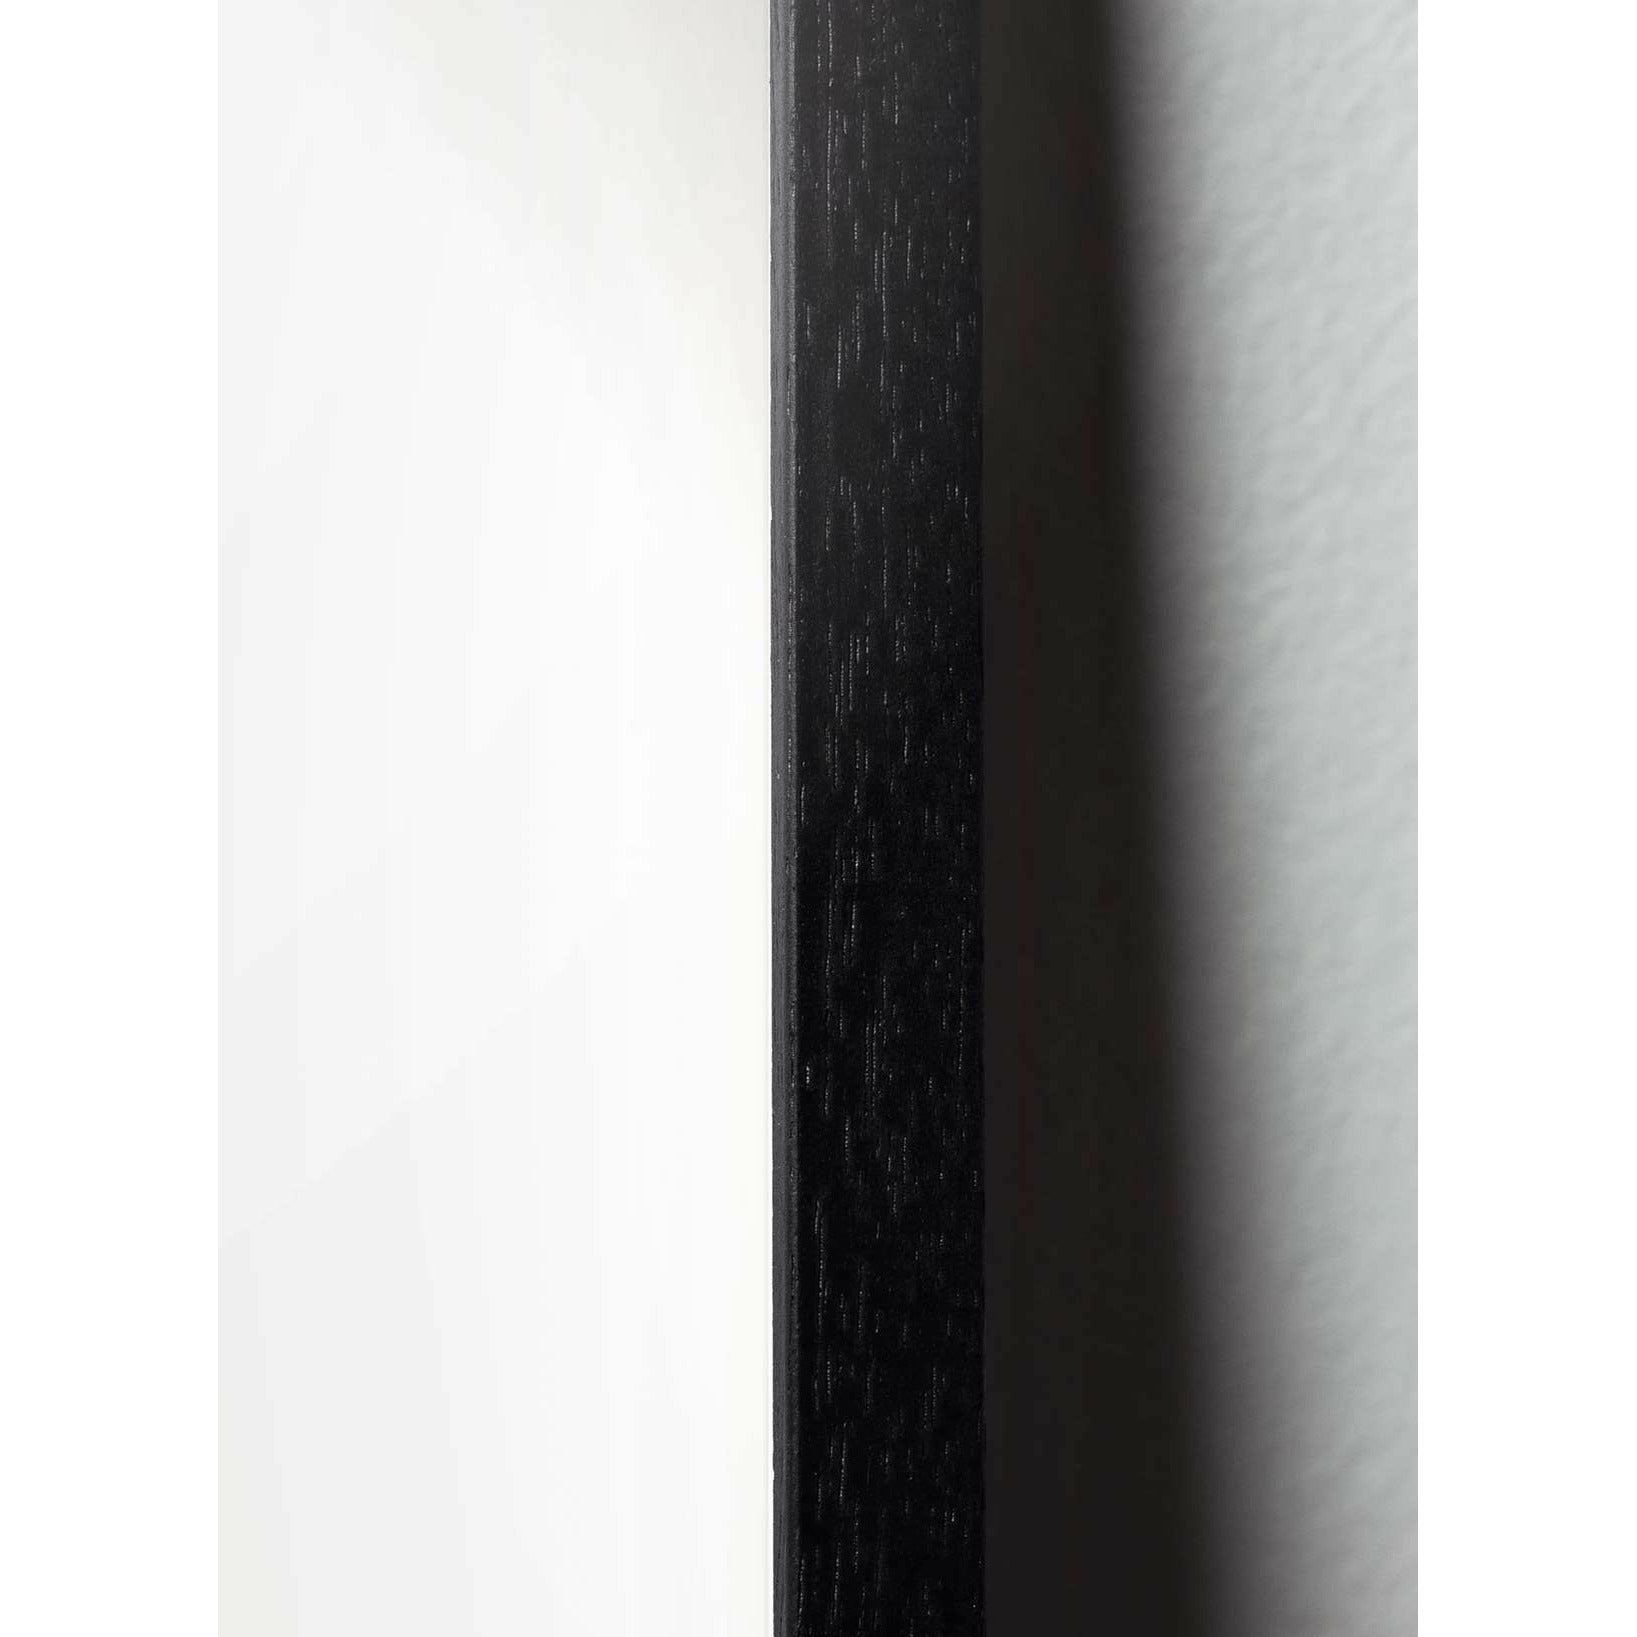 Brainchild Swan Paper Clip Poster, frame in zwart gelakt hout A5, roze achtergrond